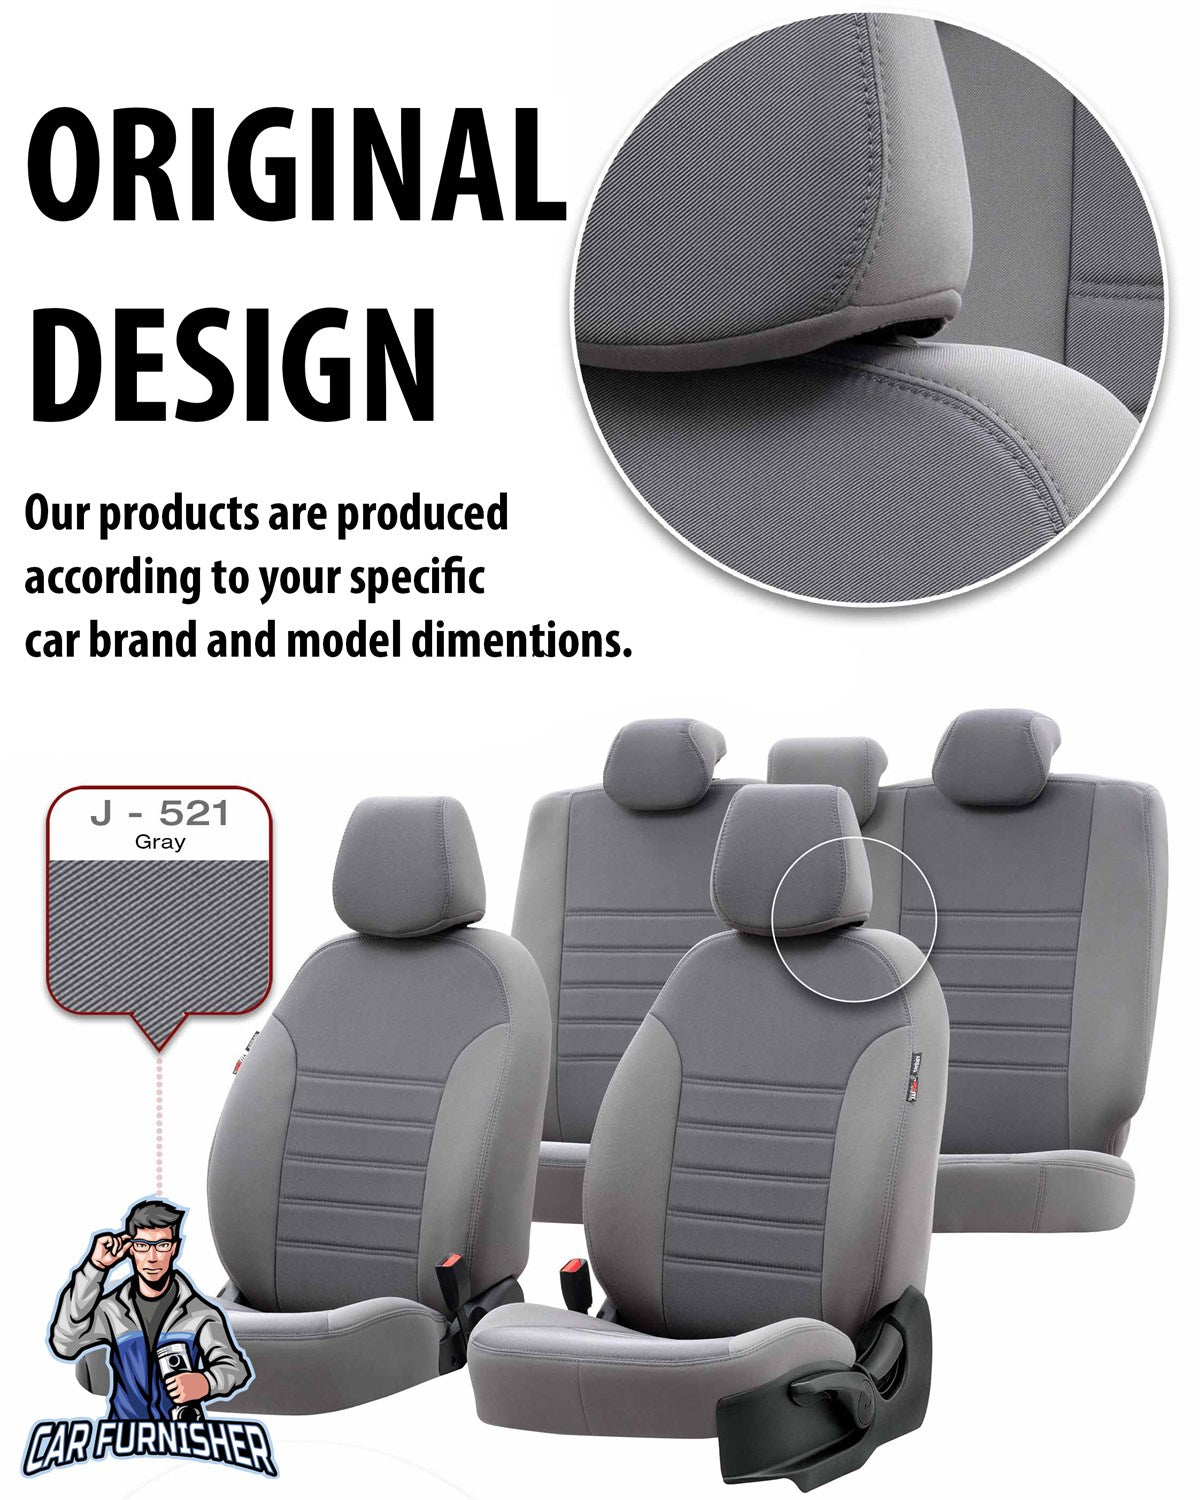 Suzuki Jimny Seat Covers Original Jacquard Design Dark Gray Jacquard Fabric